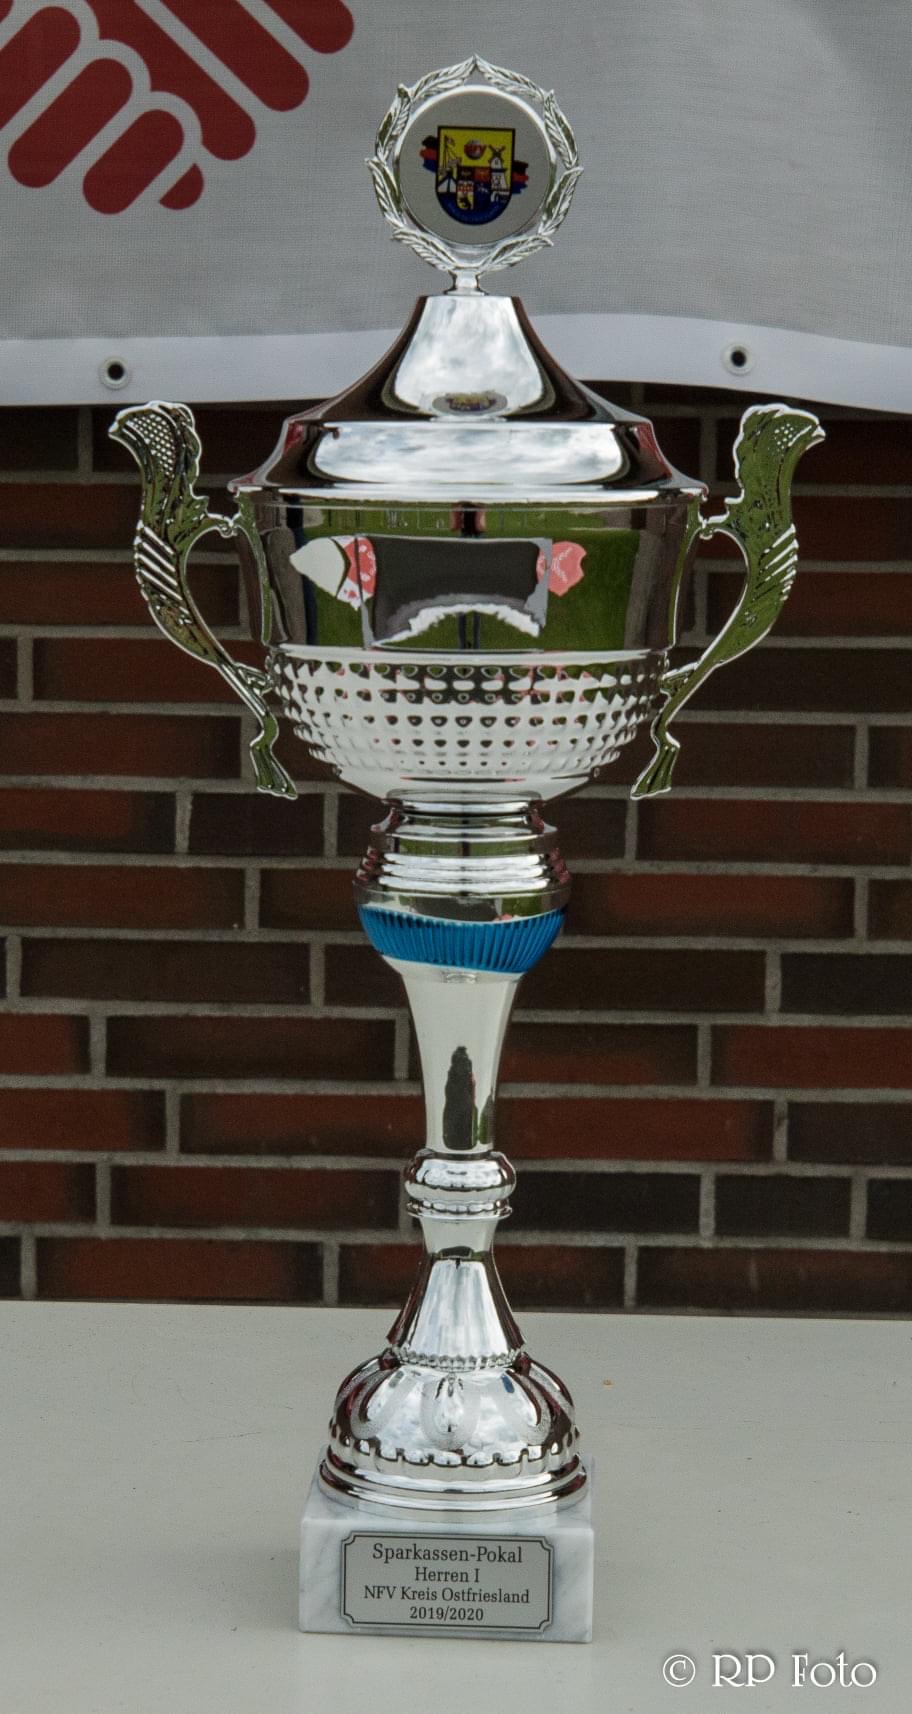 Sparkassen-Pokalsieger, Spielzeit 2019/2020.